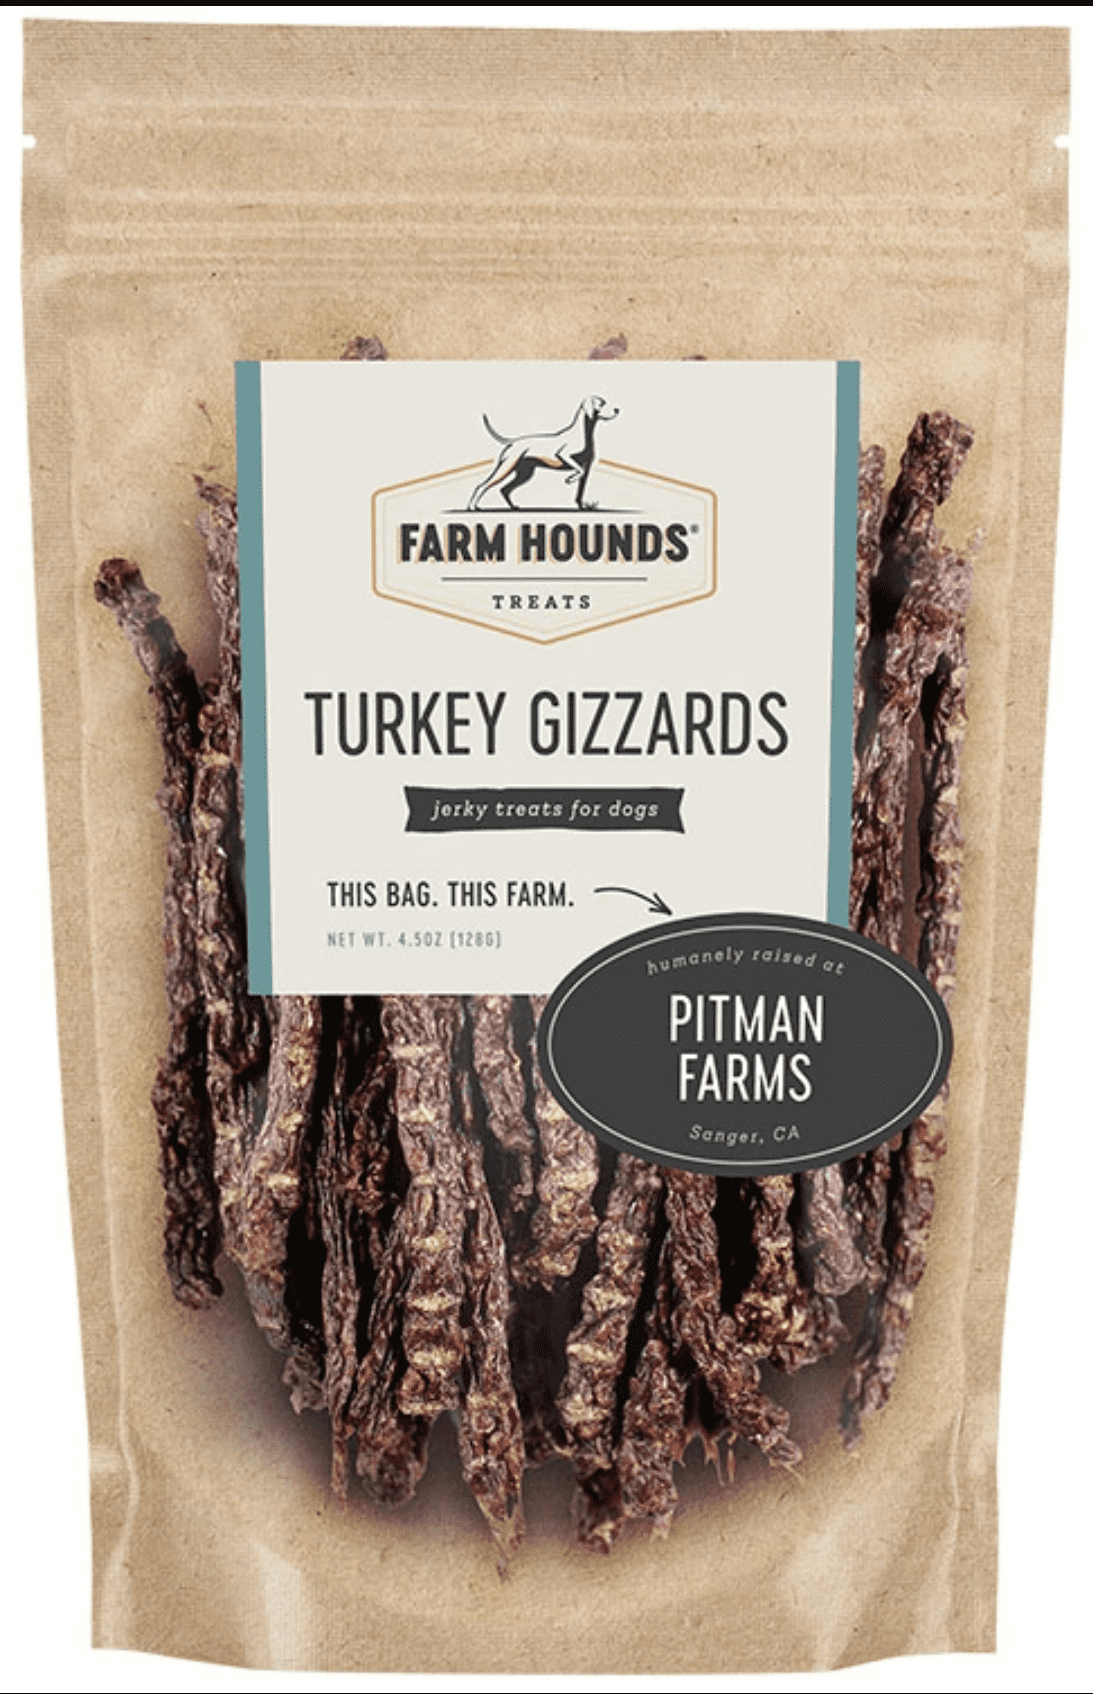 Farm Hounds Turkey Gizzards